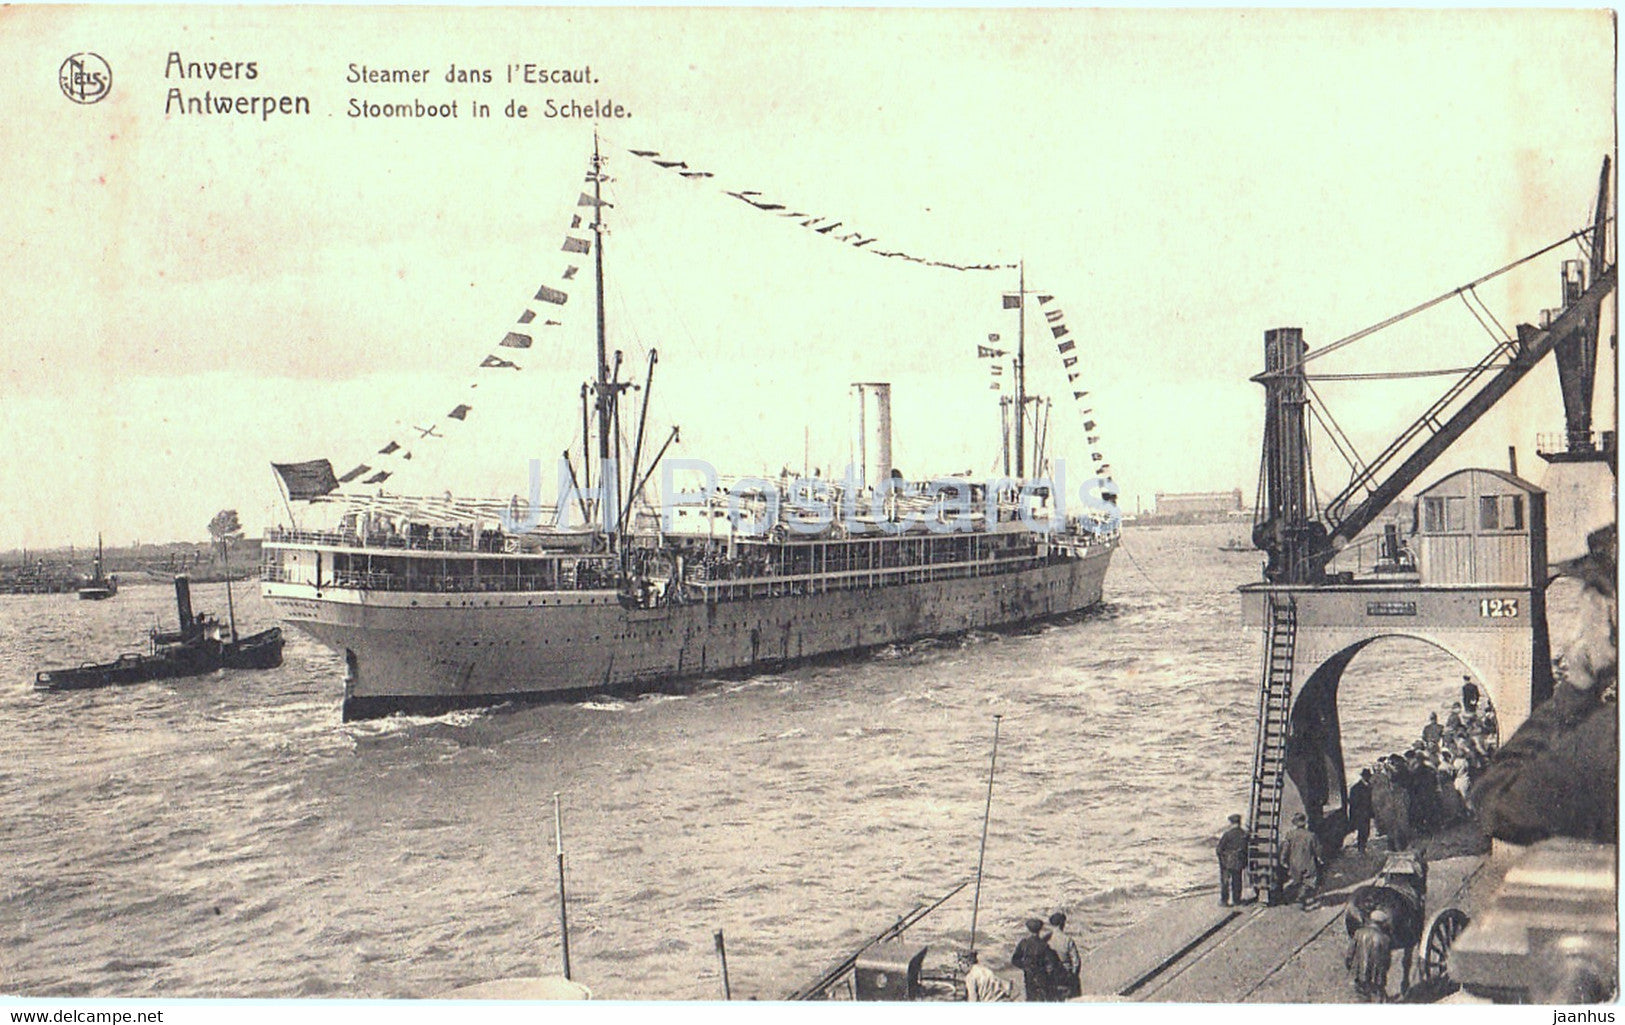 Anvers - Antwerpen - Steamer dans l'Escaut - Stoomboot in de Schelde - ship - 109 - old postcard - Belgium - used - JH Postcards